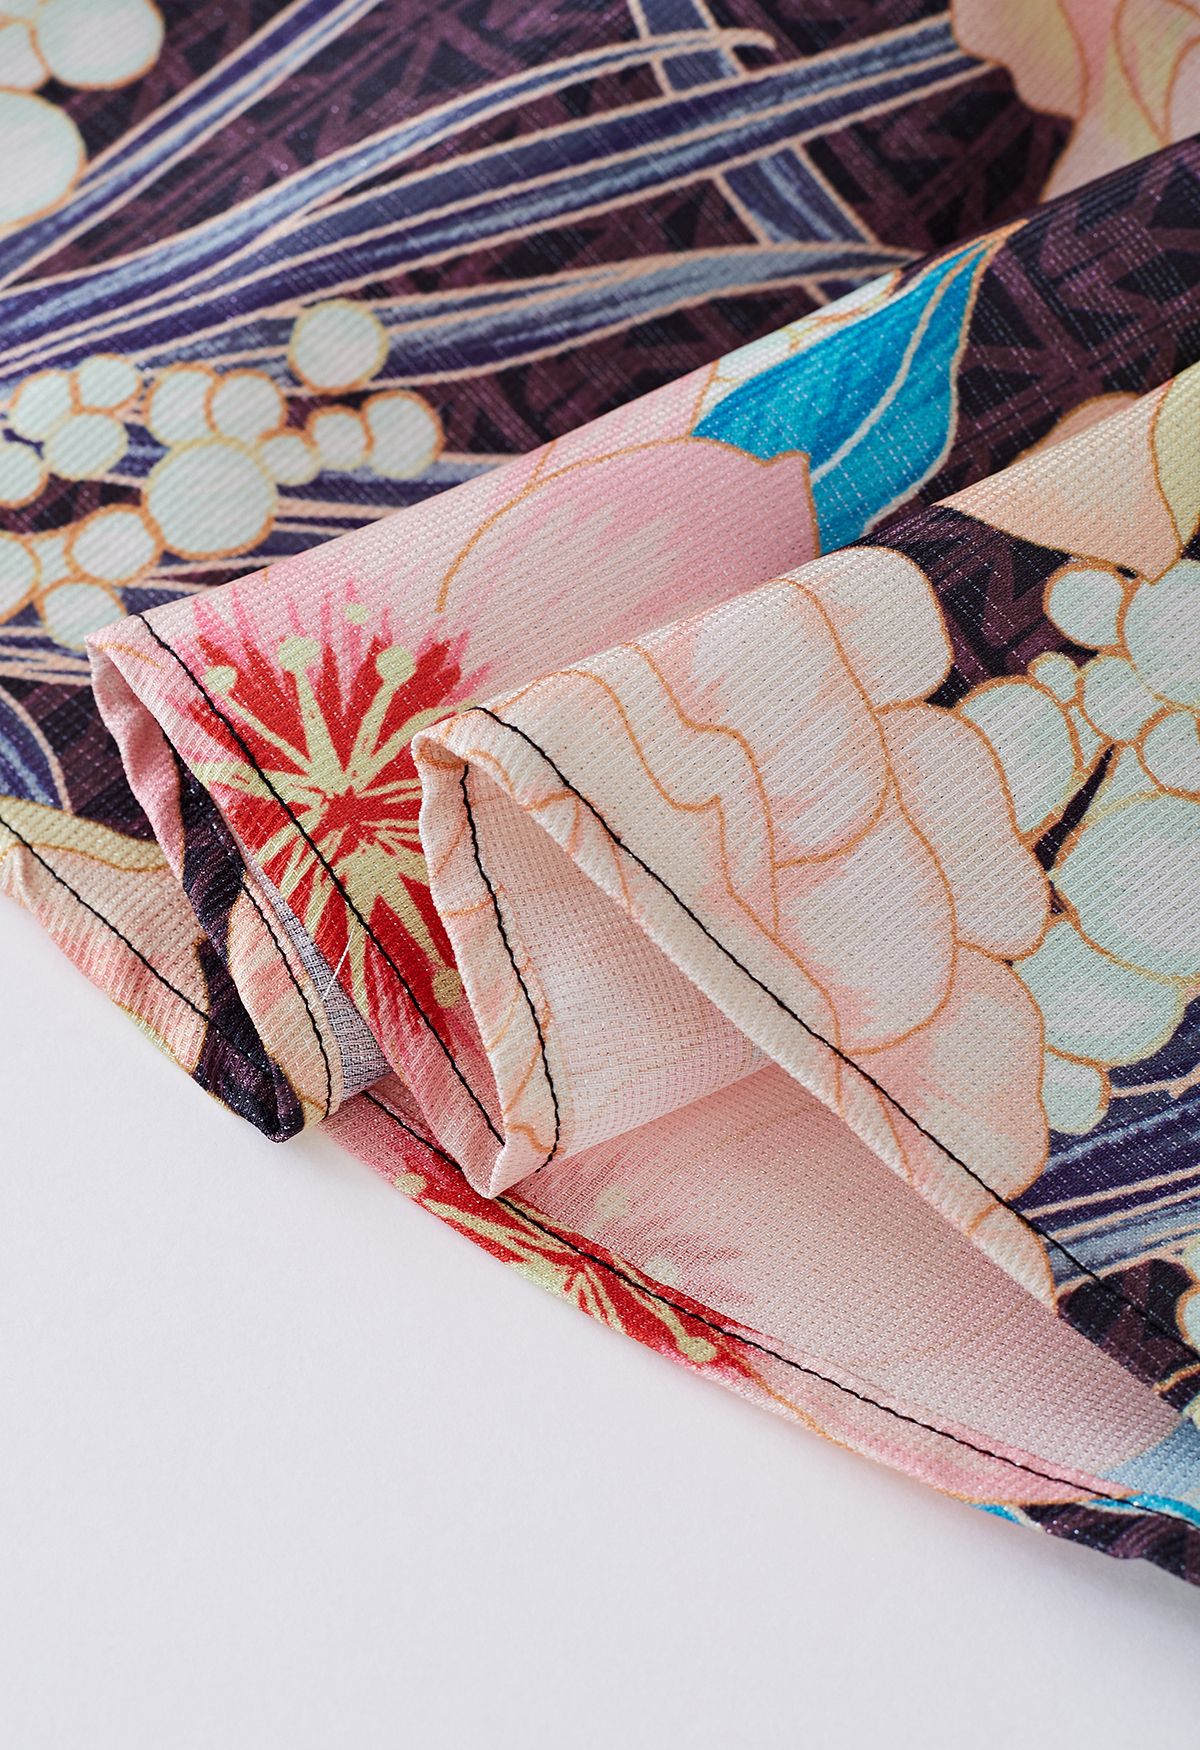 Falda midi con estampado floral metalizado brillante